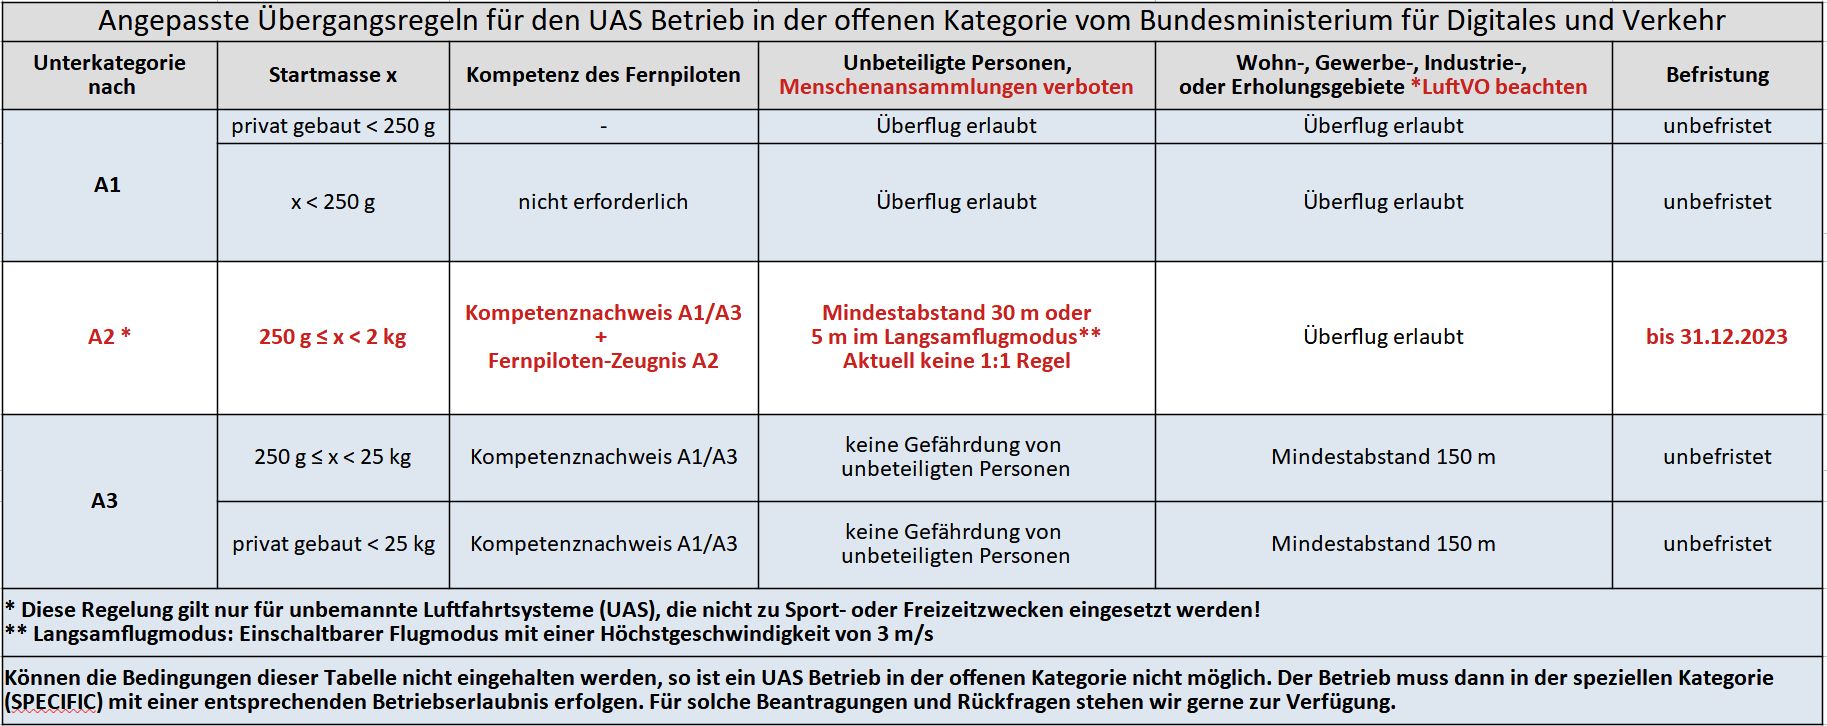 UAS OPEN Regeln Deutschland A2 2023